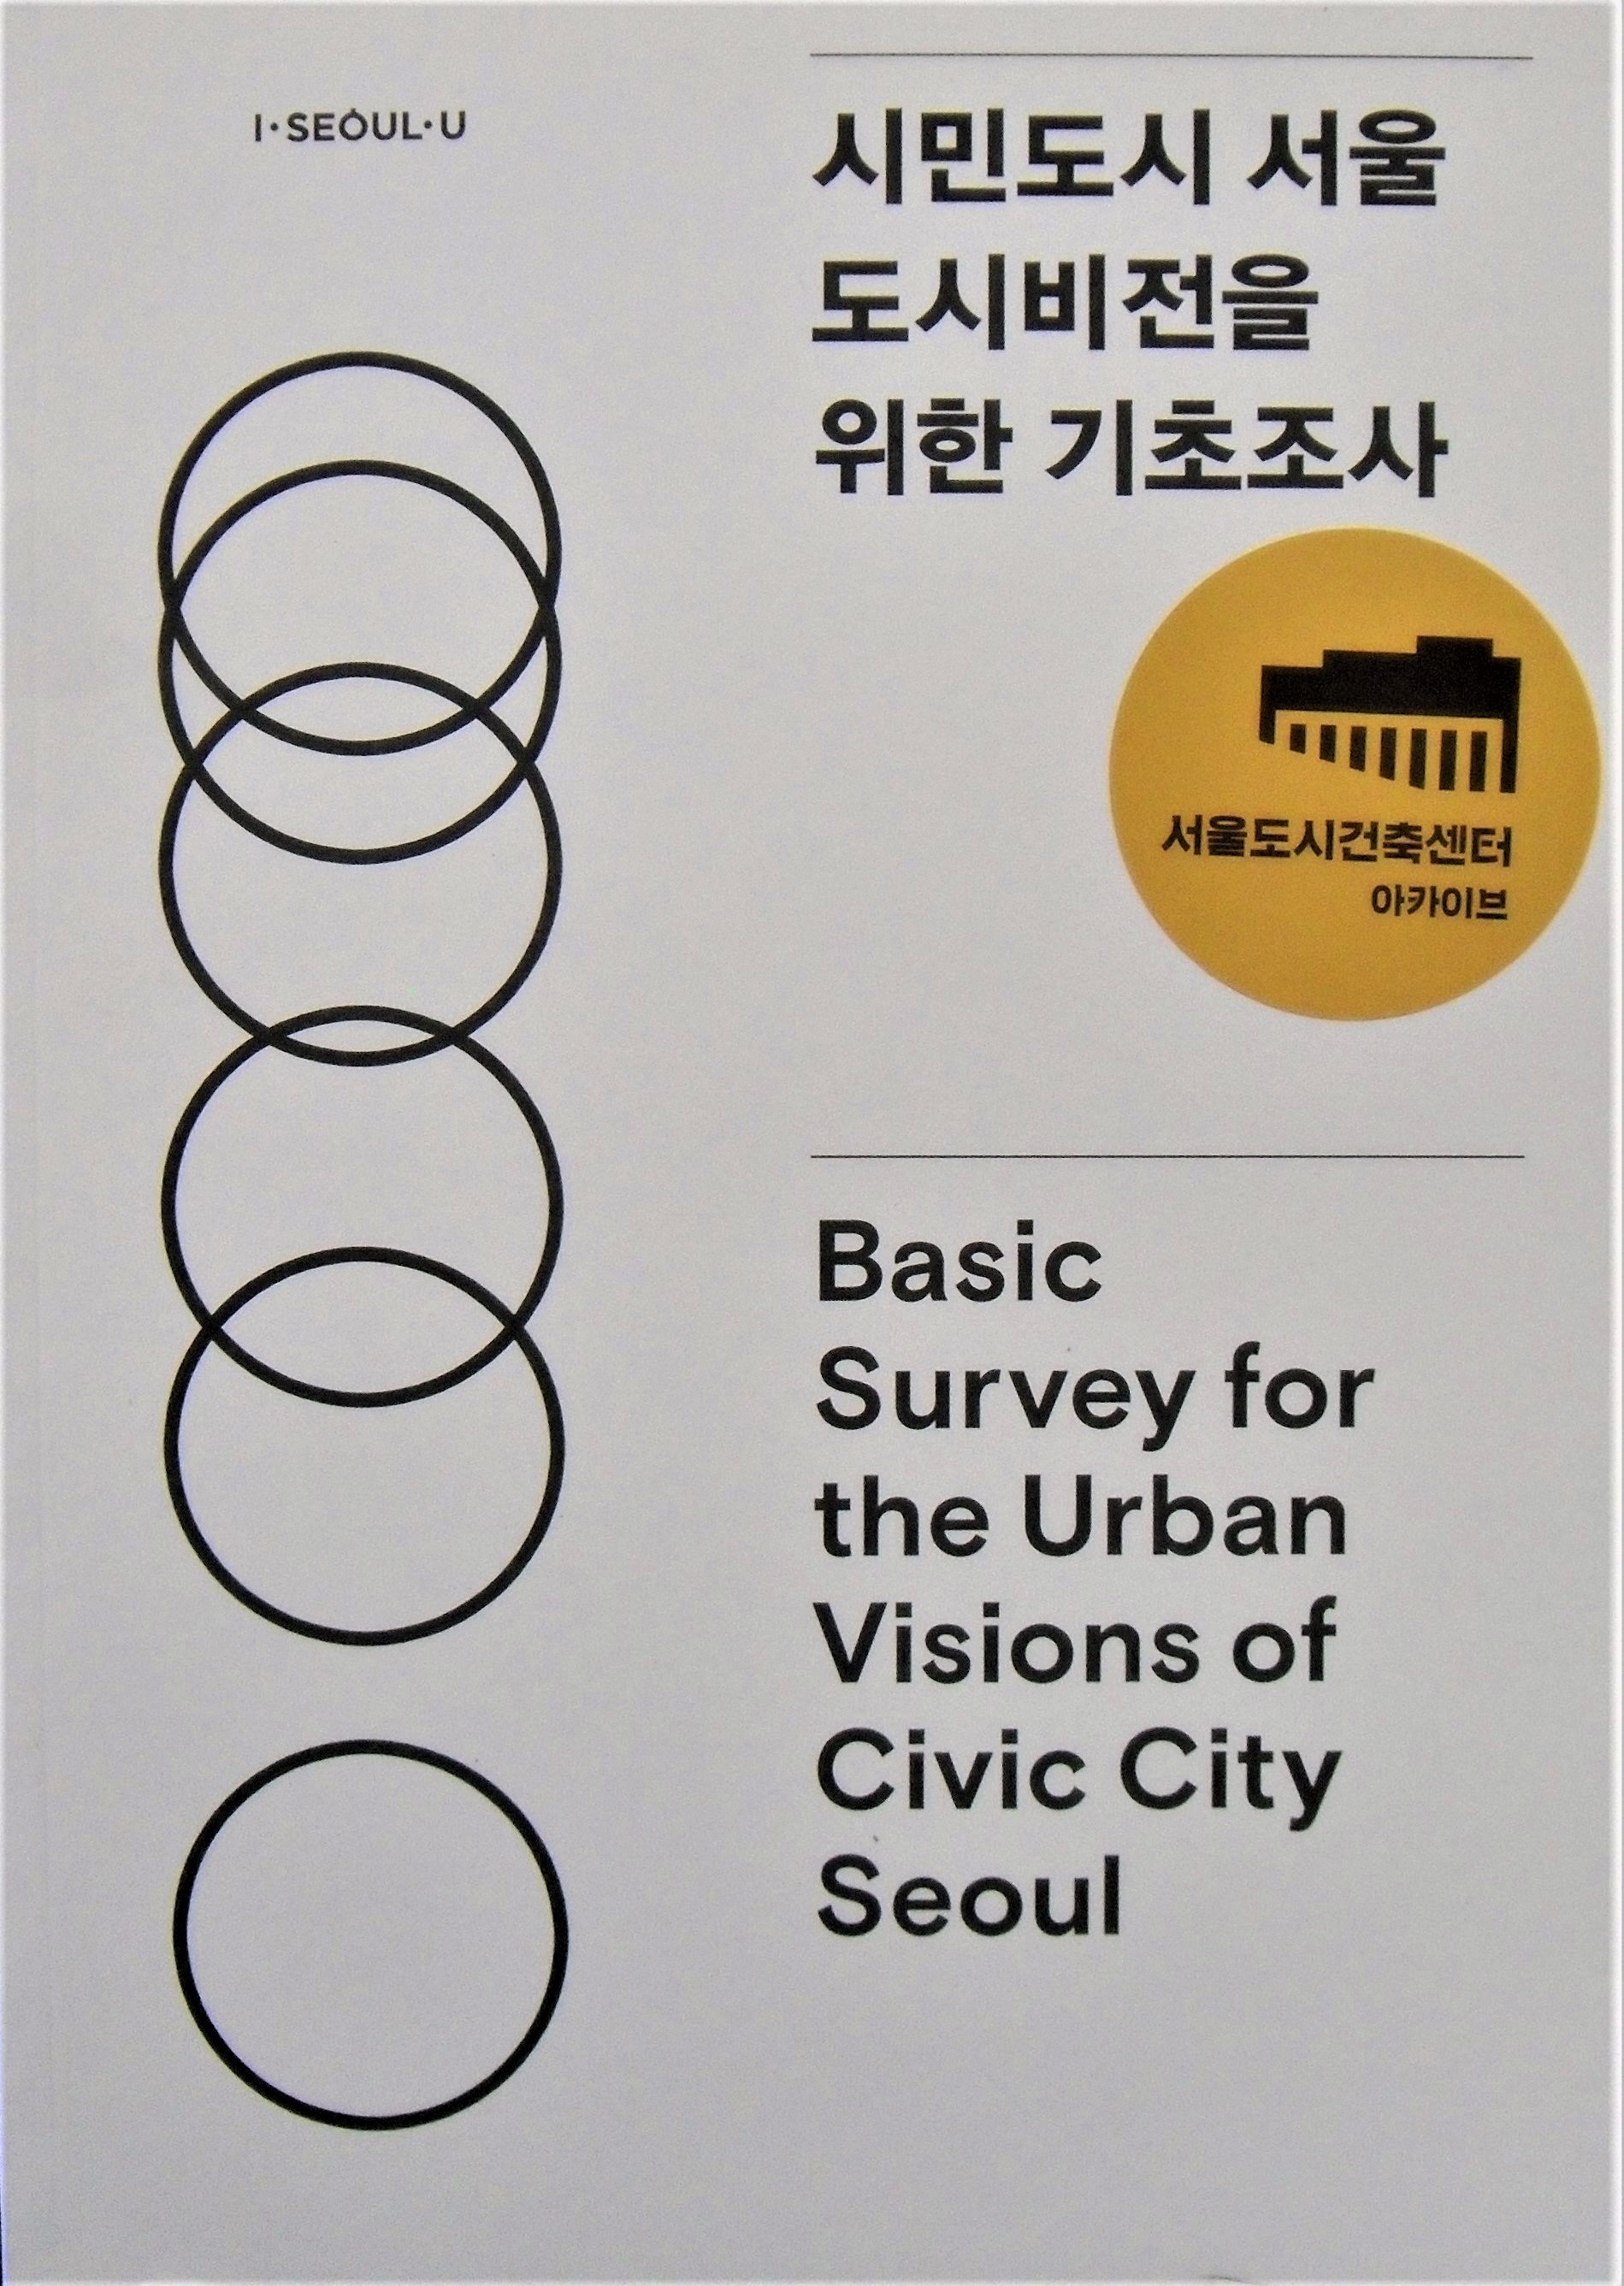 시민도시 서울 도시비전을 위한 기초조사